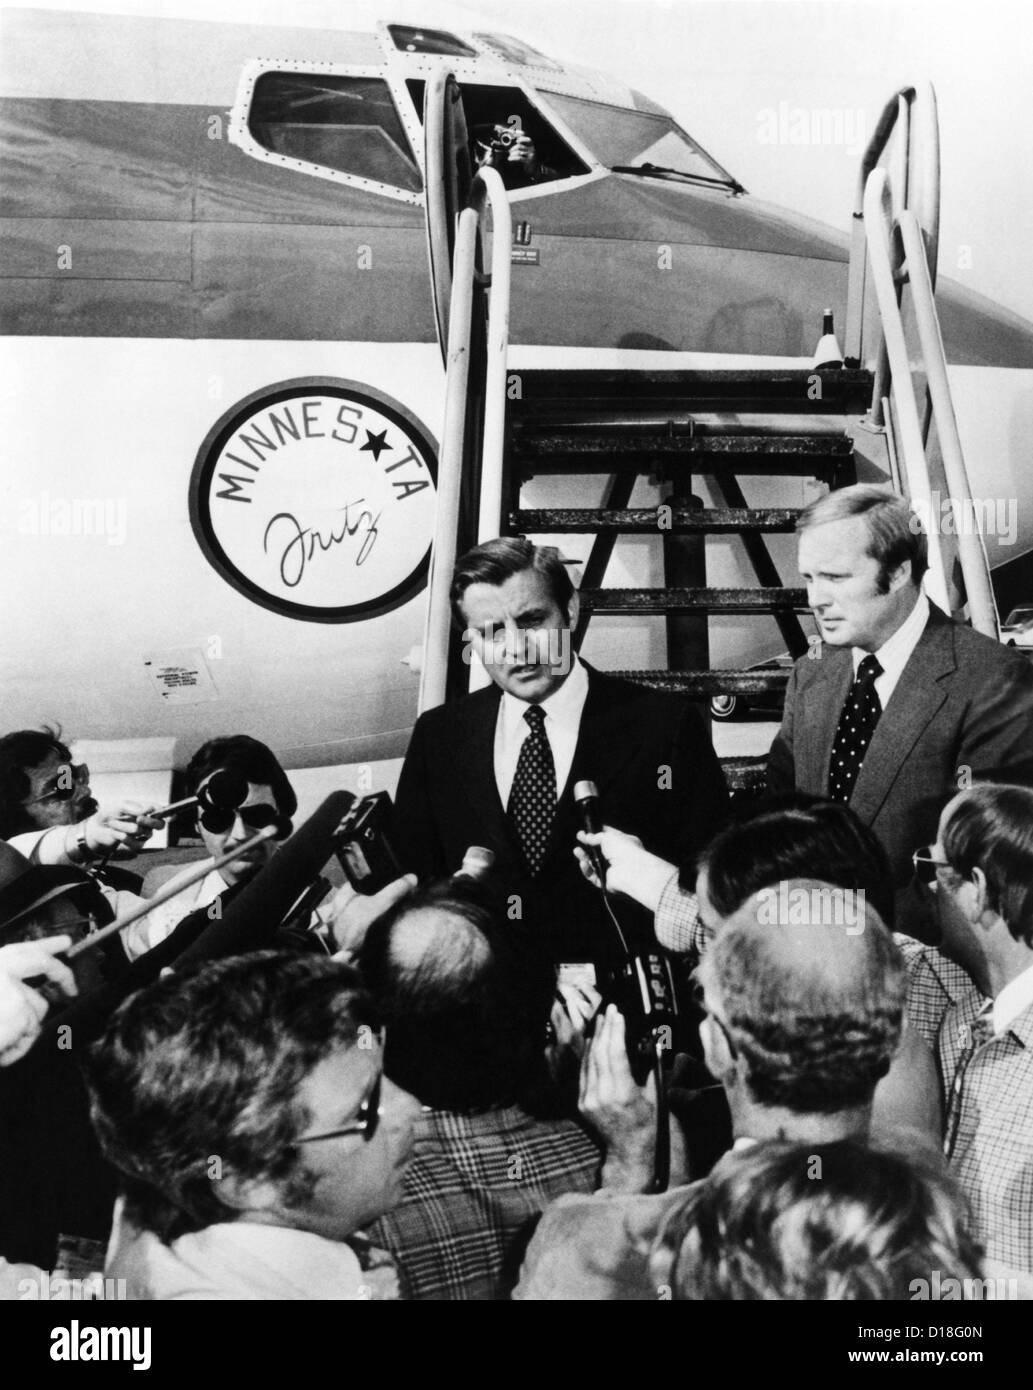 Demokratischen Vize Präsidenten Walter Mondale Kampagne Flugzeug wurde "Minnesota Fritz" getauft. Flughafen Chicago Midway, Sept. Stockfoto